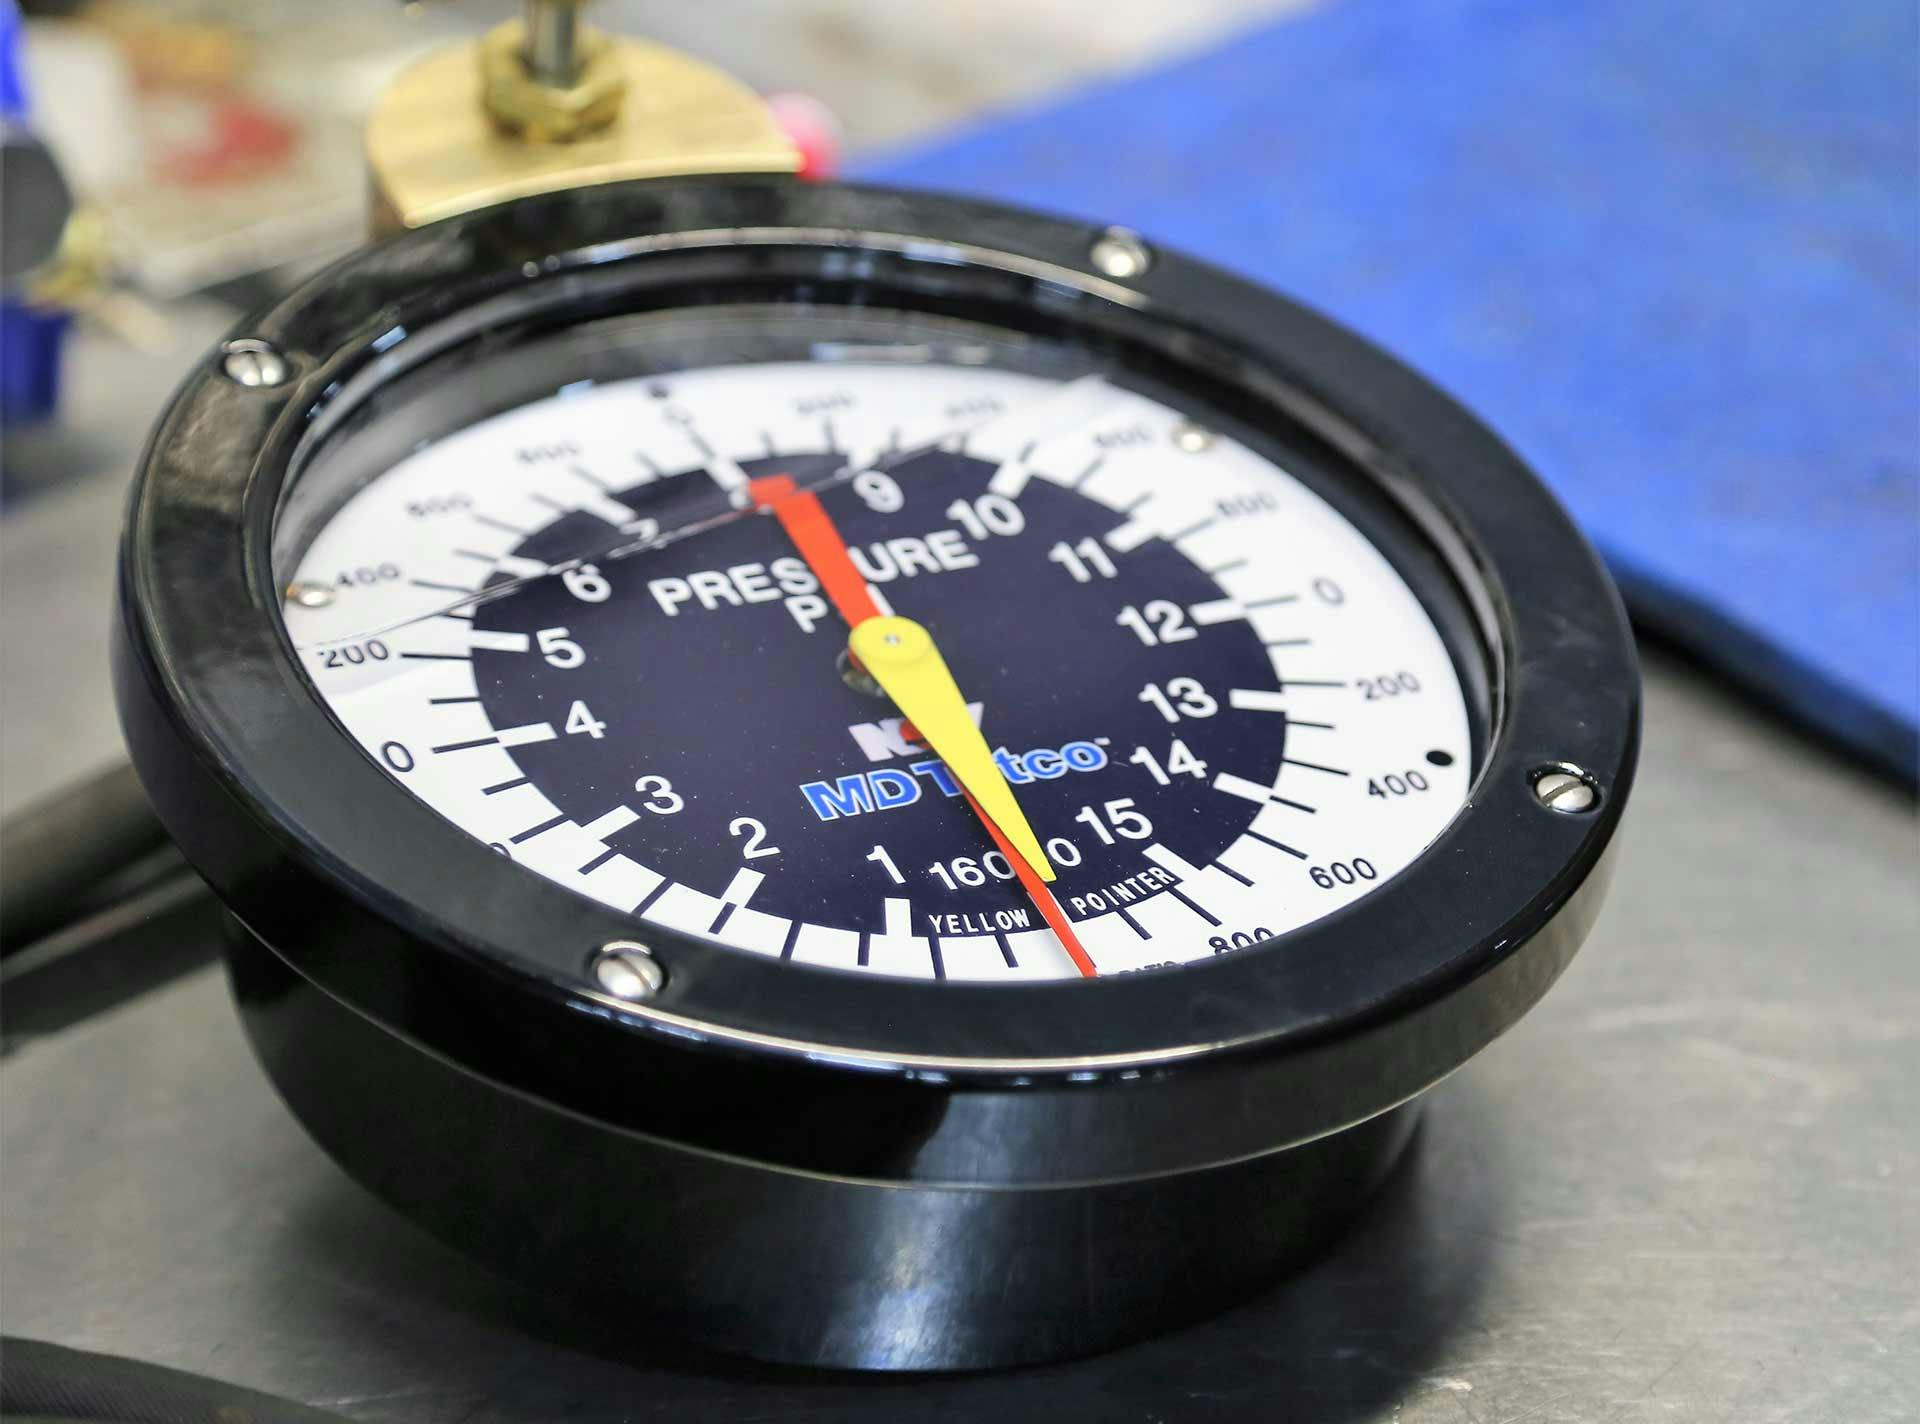 A closeup of a pressure gauge